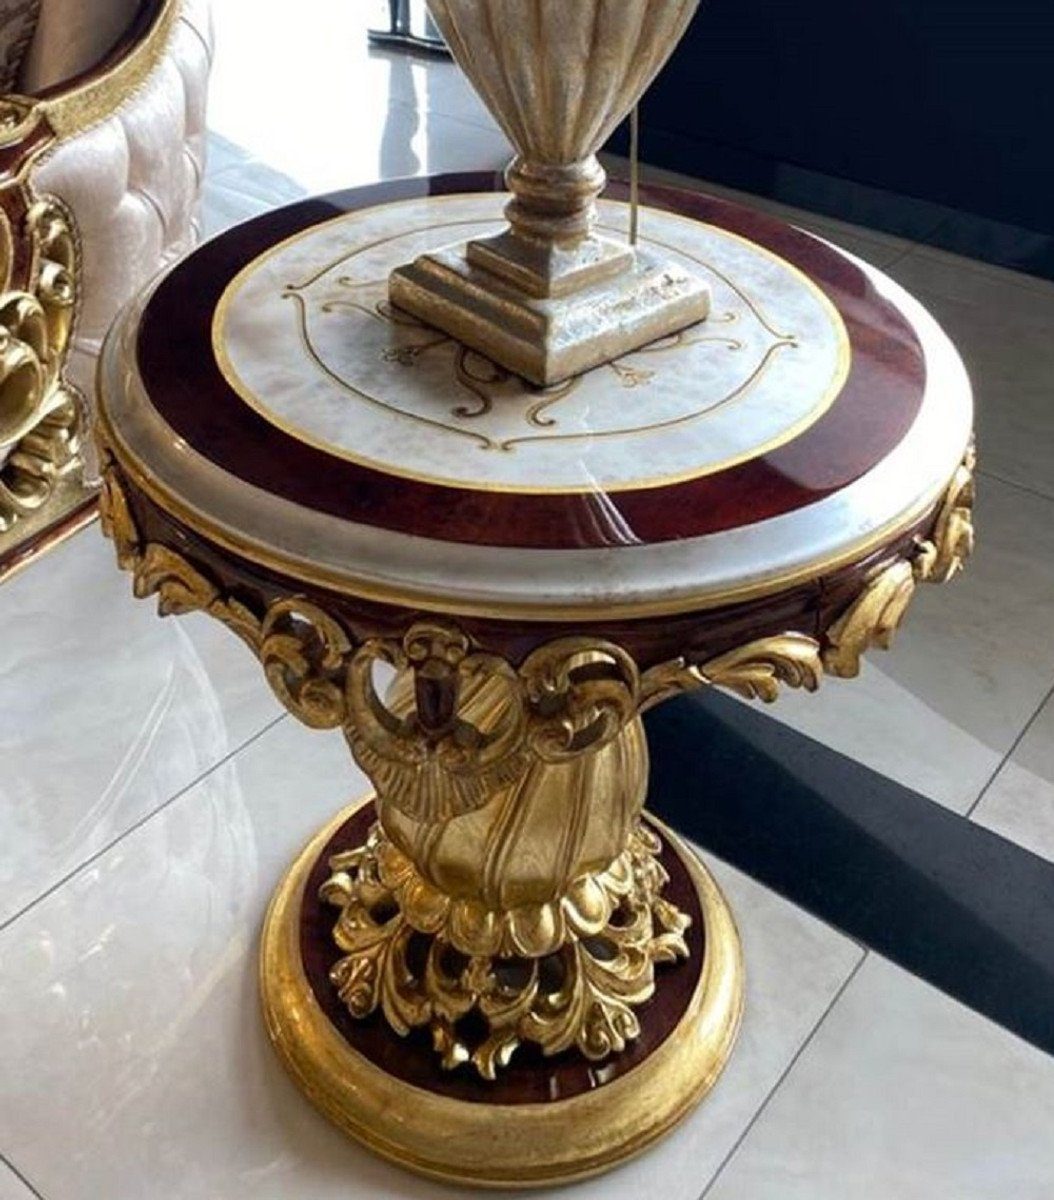 Casa Padrino Beistelltisch Luxus Barock Beistelltisch Weiß / Braun / Gold - Runder Massivholz Tisch im Barockstil - Handgefertigte Barock Möbel - Edel & Prunkvoll